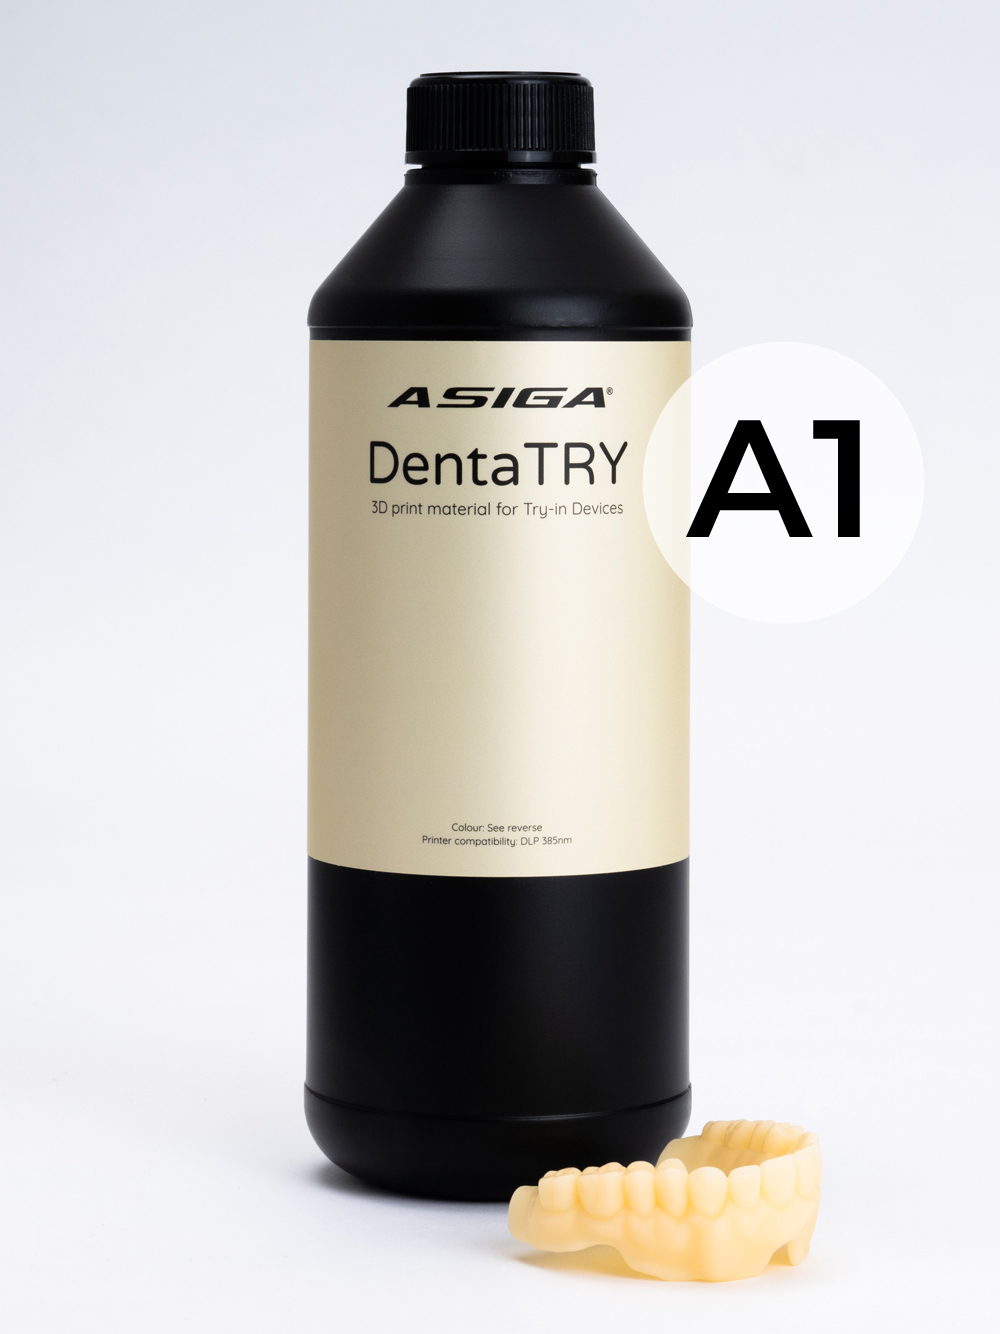 Asiga-DentaTRY-A1-web